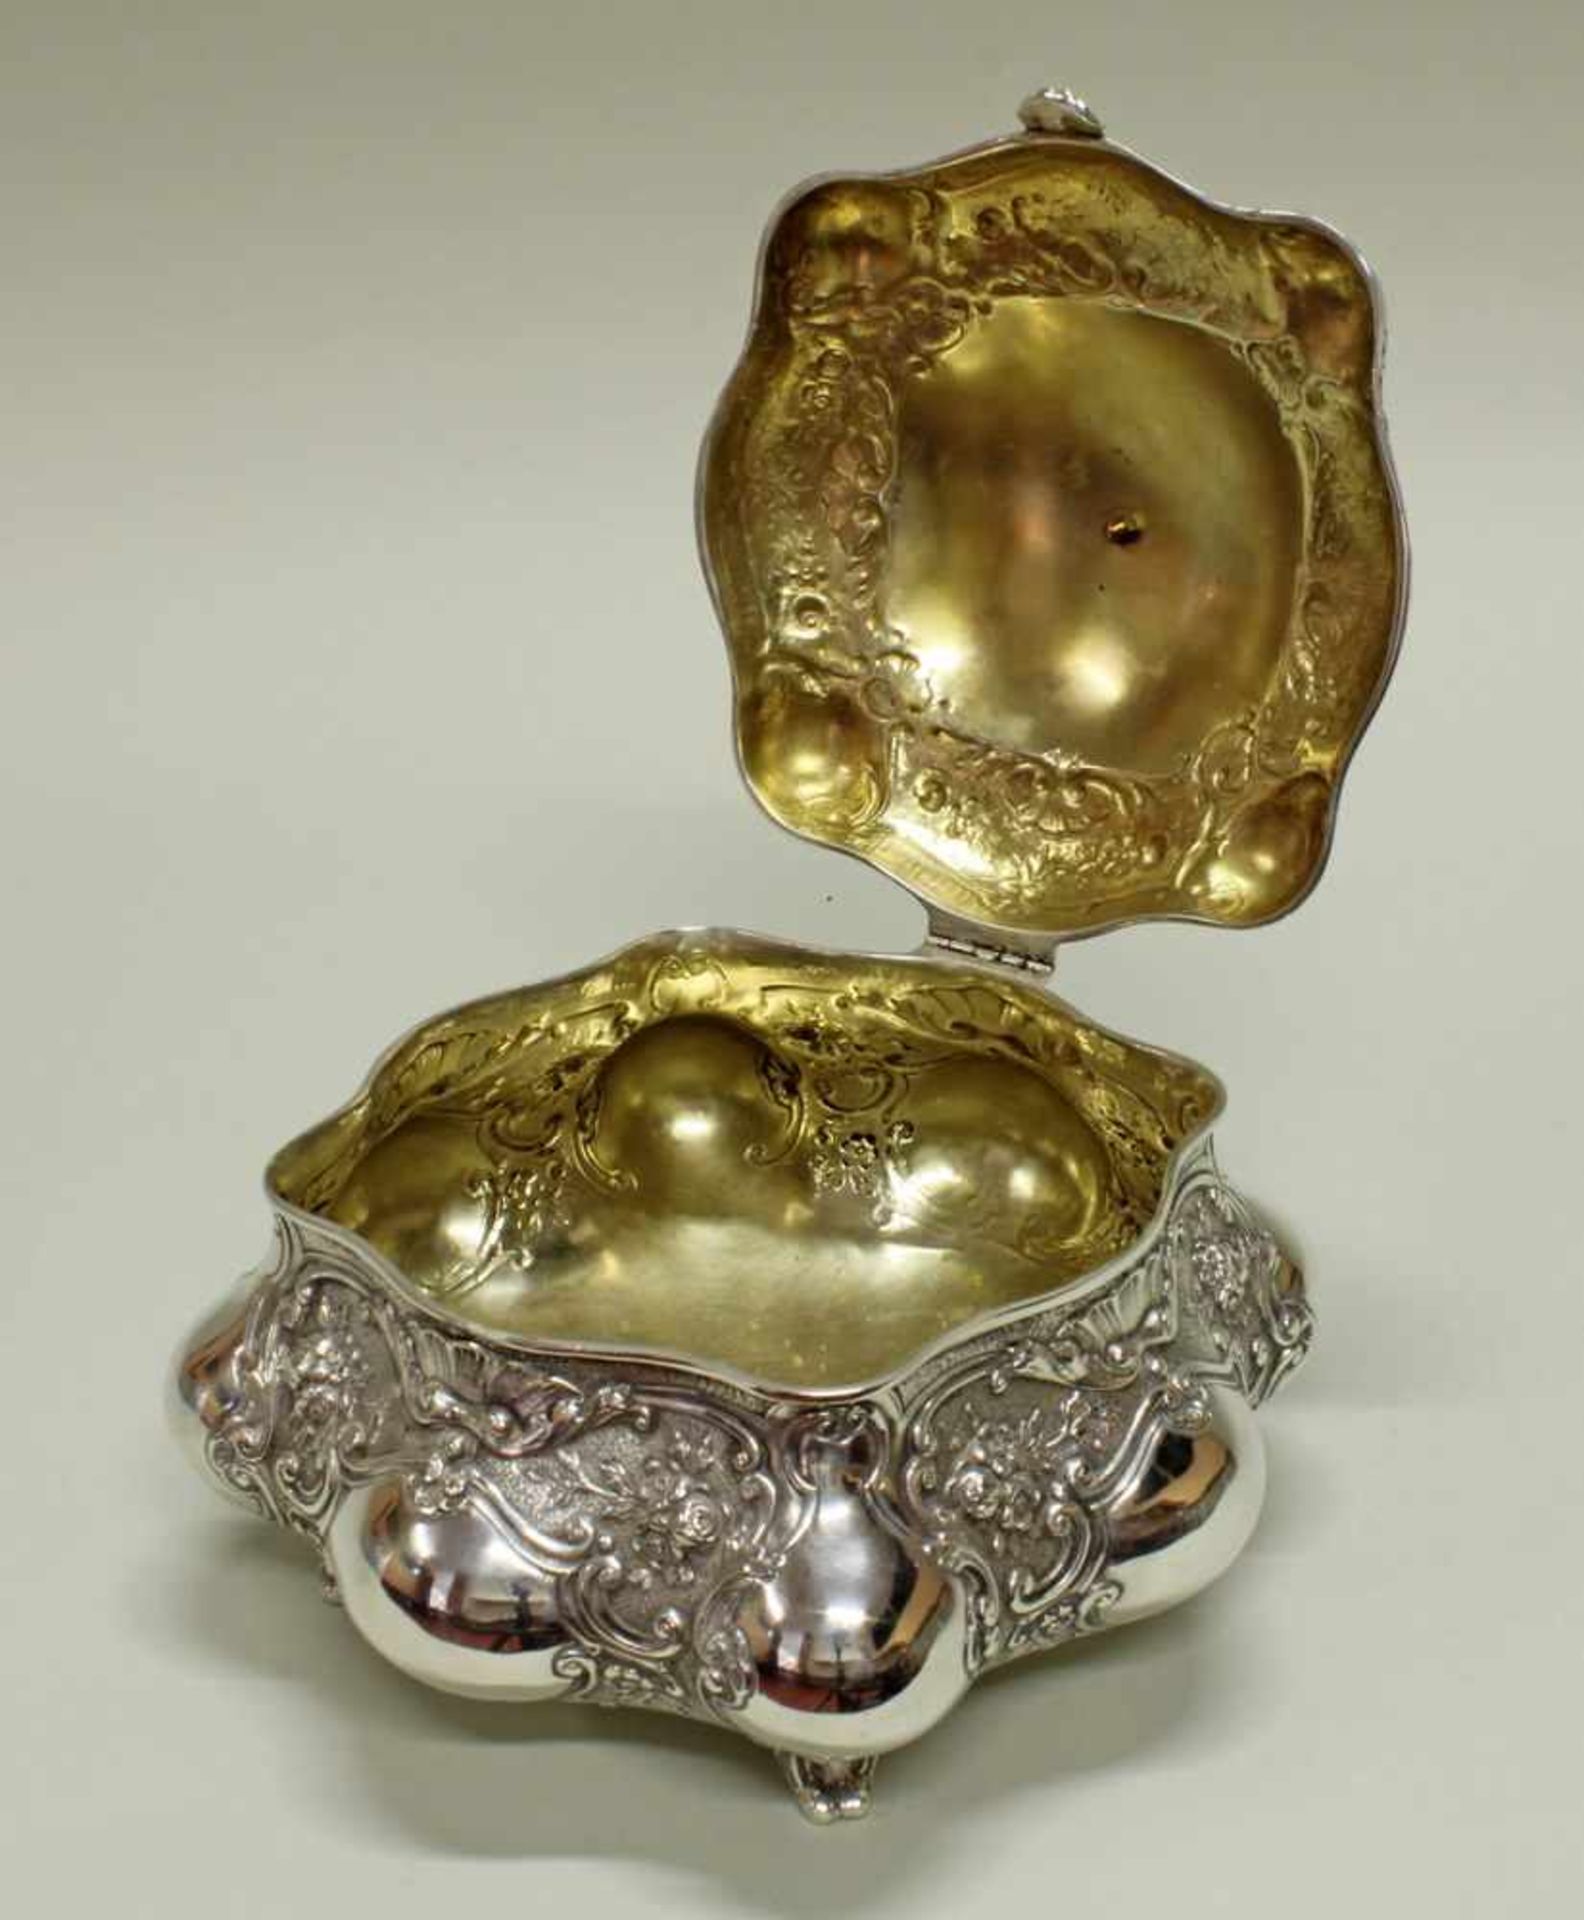 Deckeldose, Silber 800, deutsch, Rokokoform, innen vergoldet, 15 x 20 x 20 cm, ca. 920 g- - -25.00 % - Image 3 of 4